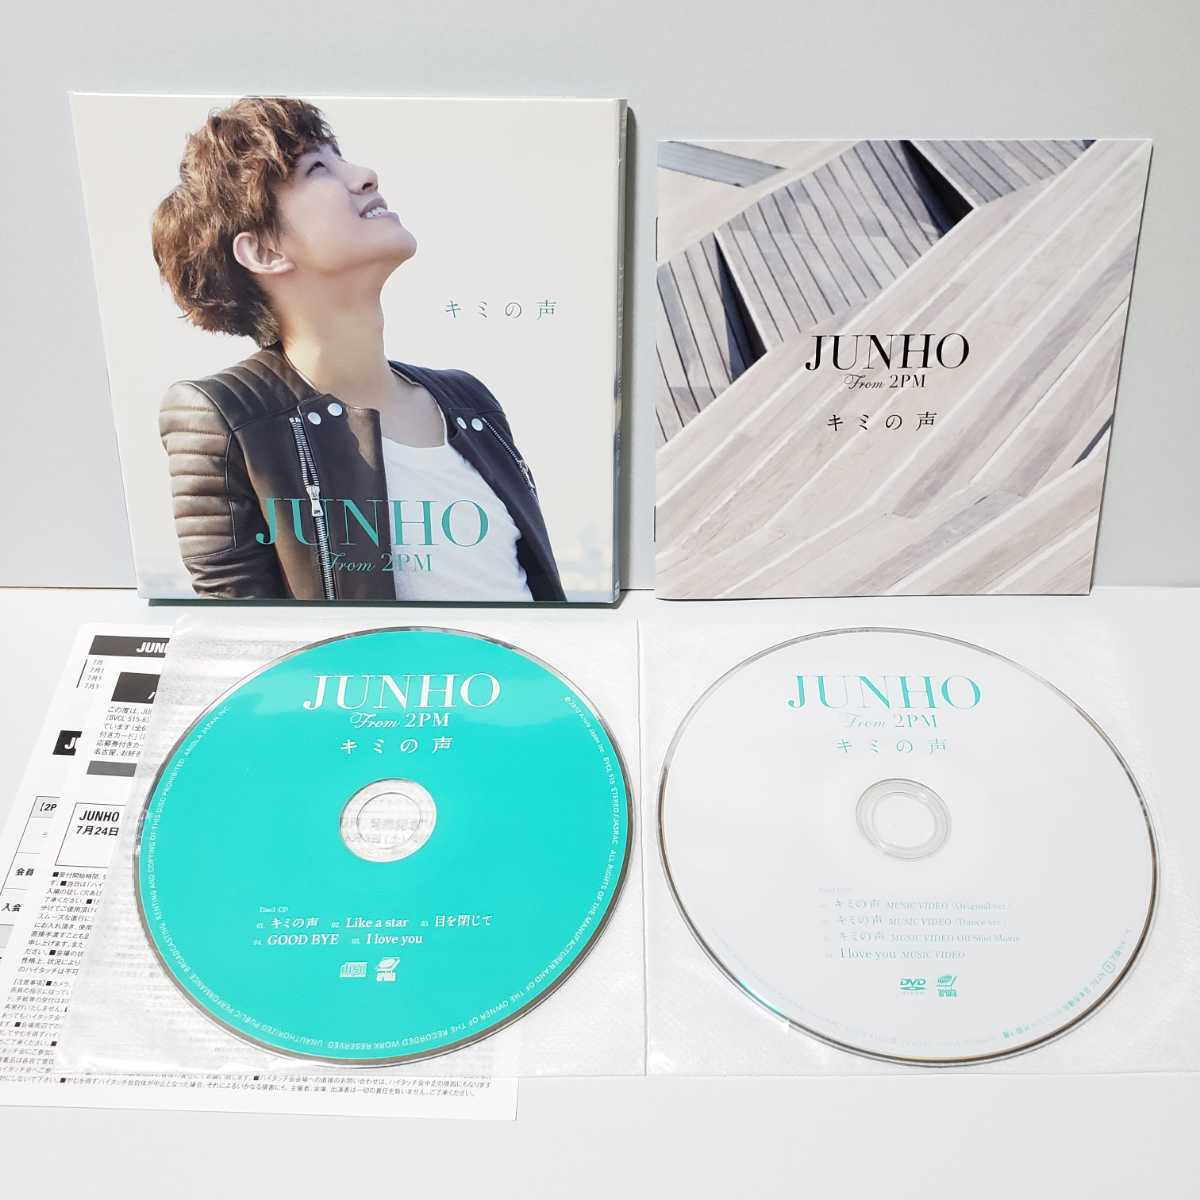 【超貴重!!!】【送料無料】JUNHO From 2PM★キミの声★初回限定盤A CD+DVD★美品 ジュノ